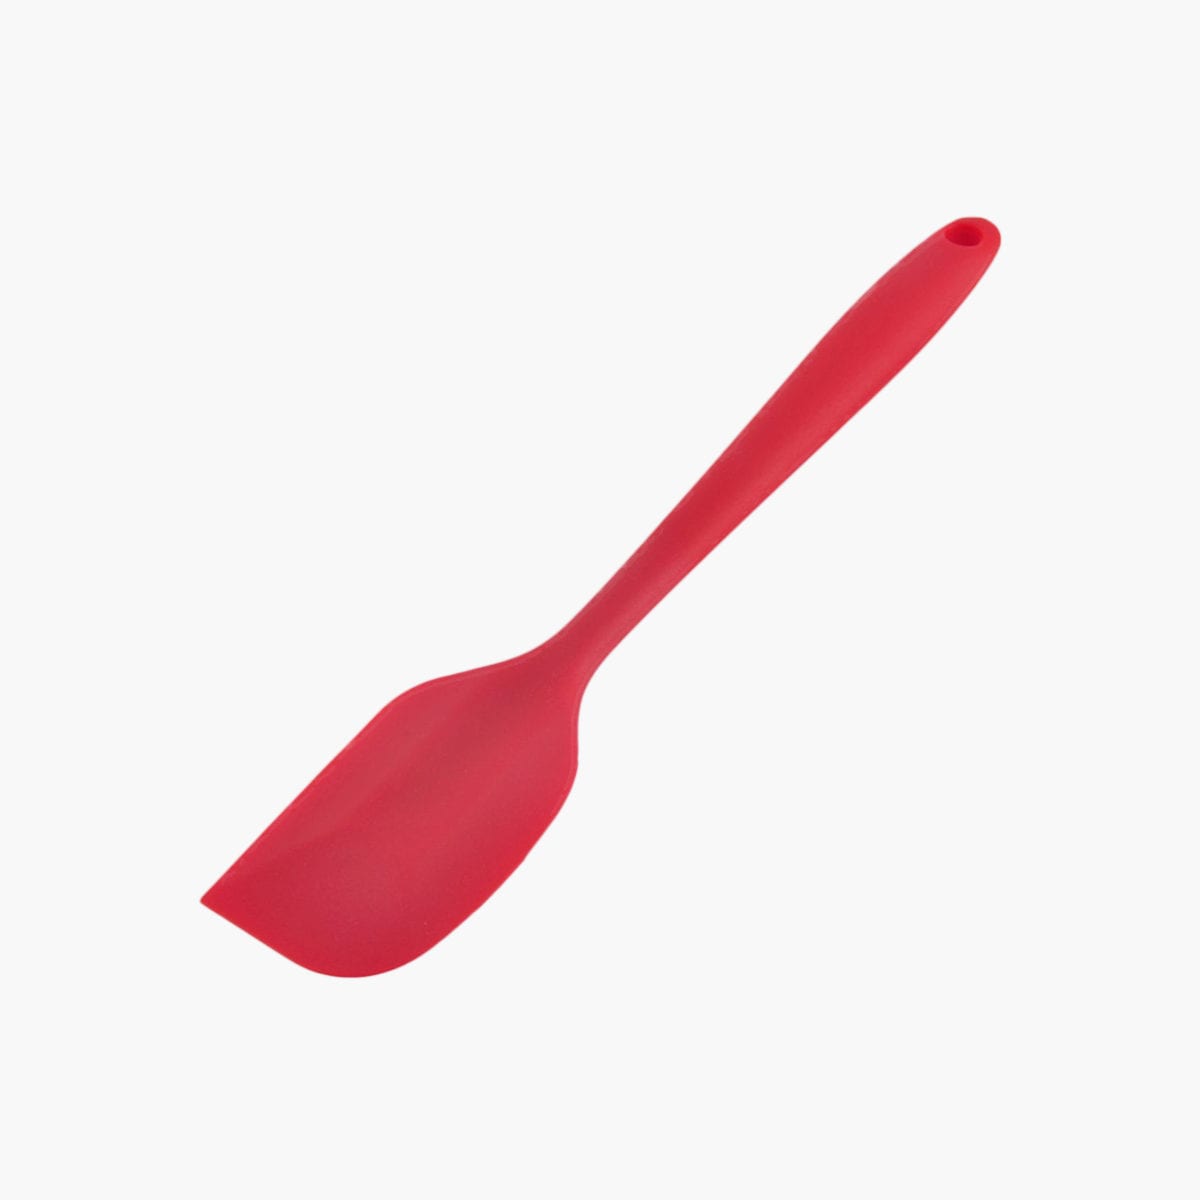 Red silicone spatula